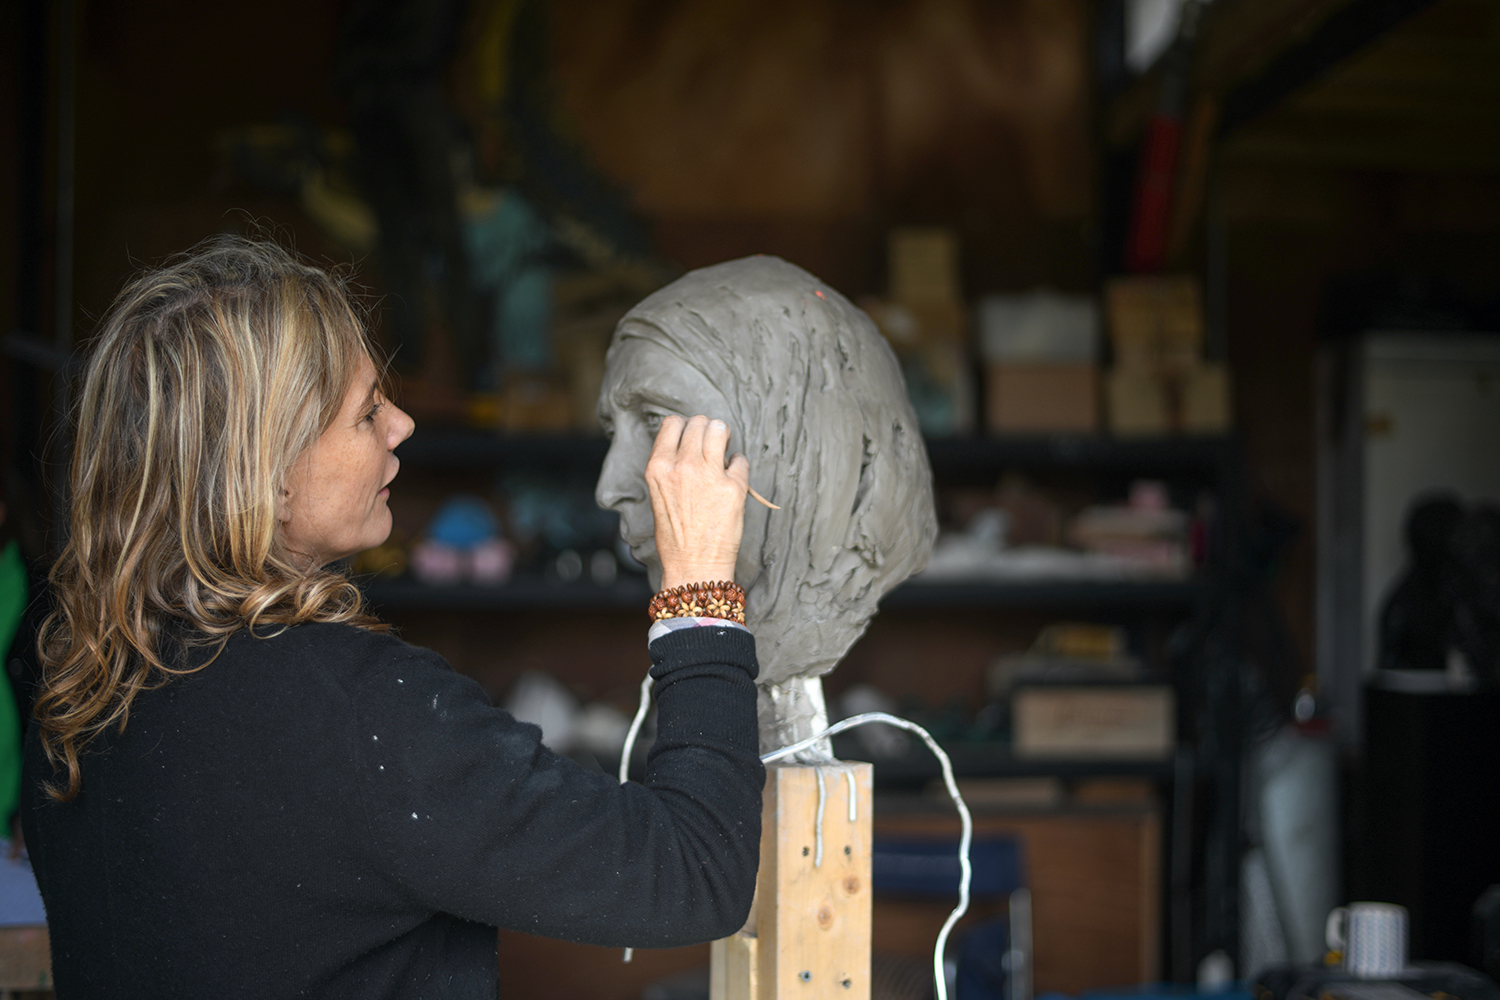 Kate Viner sculpting